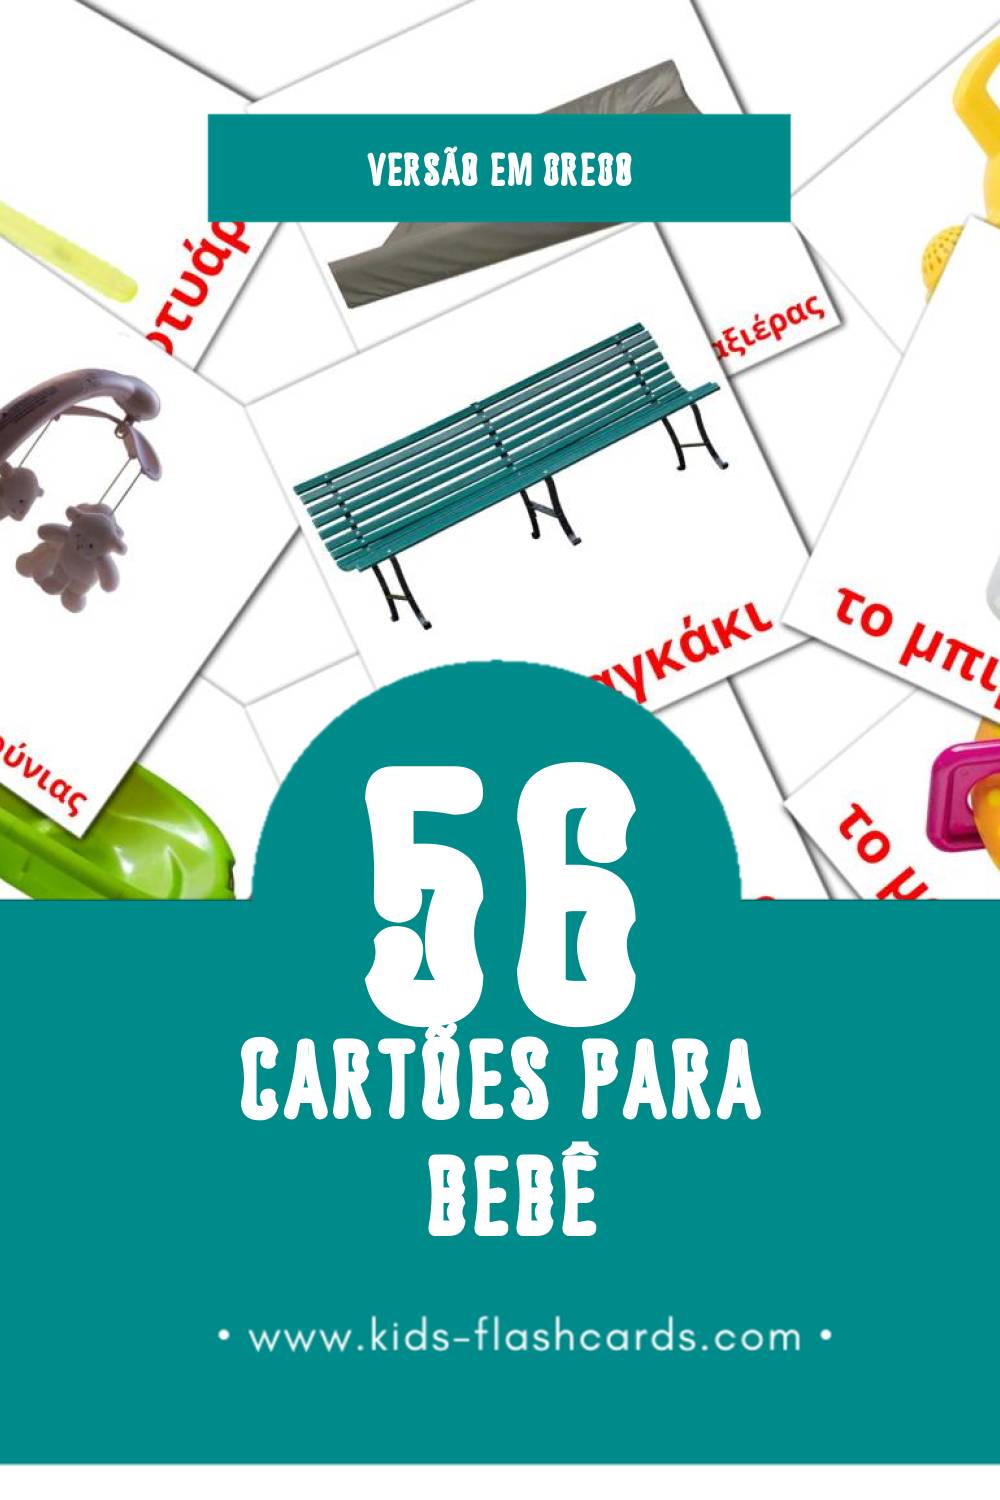 Flashcards de μωρό Visuais para Toddlers (56 cartões em Grego)